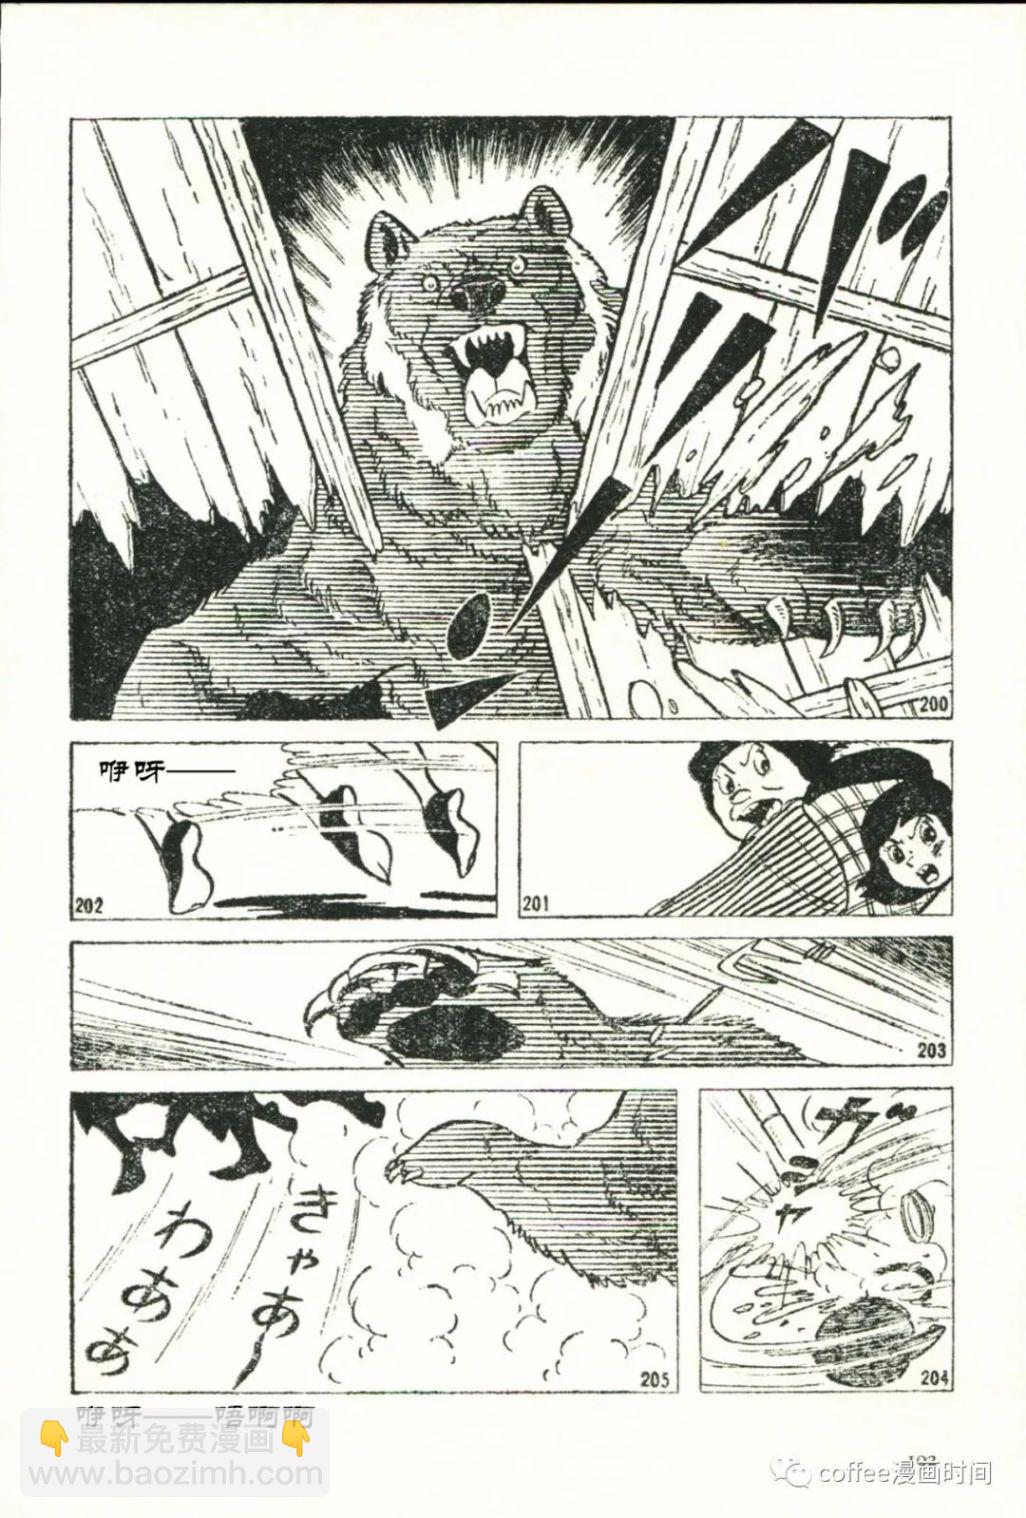 日本短篇漫畫傑作集 - 石川球太《棕熊風》 - 6